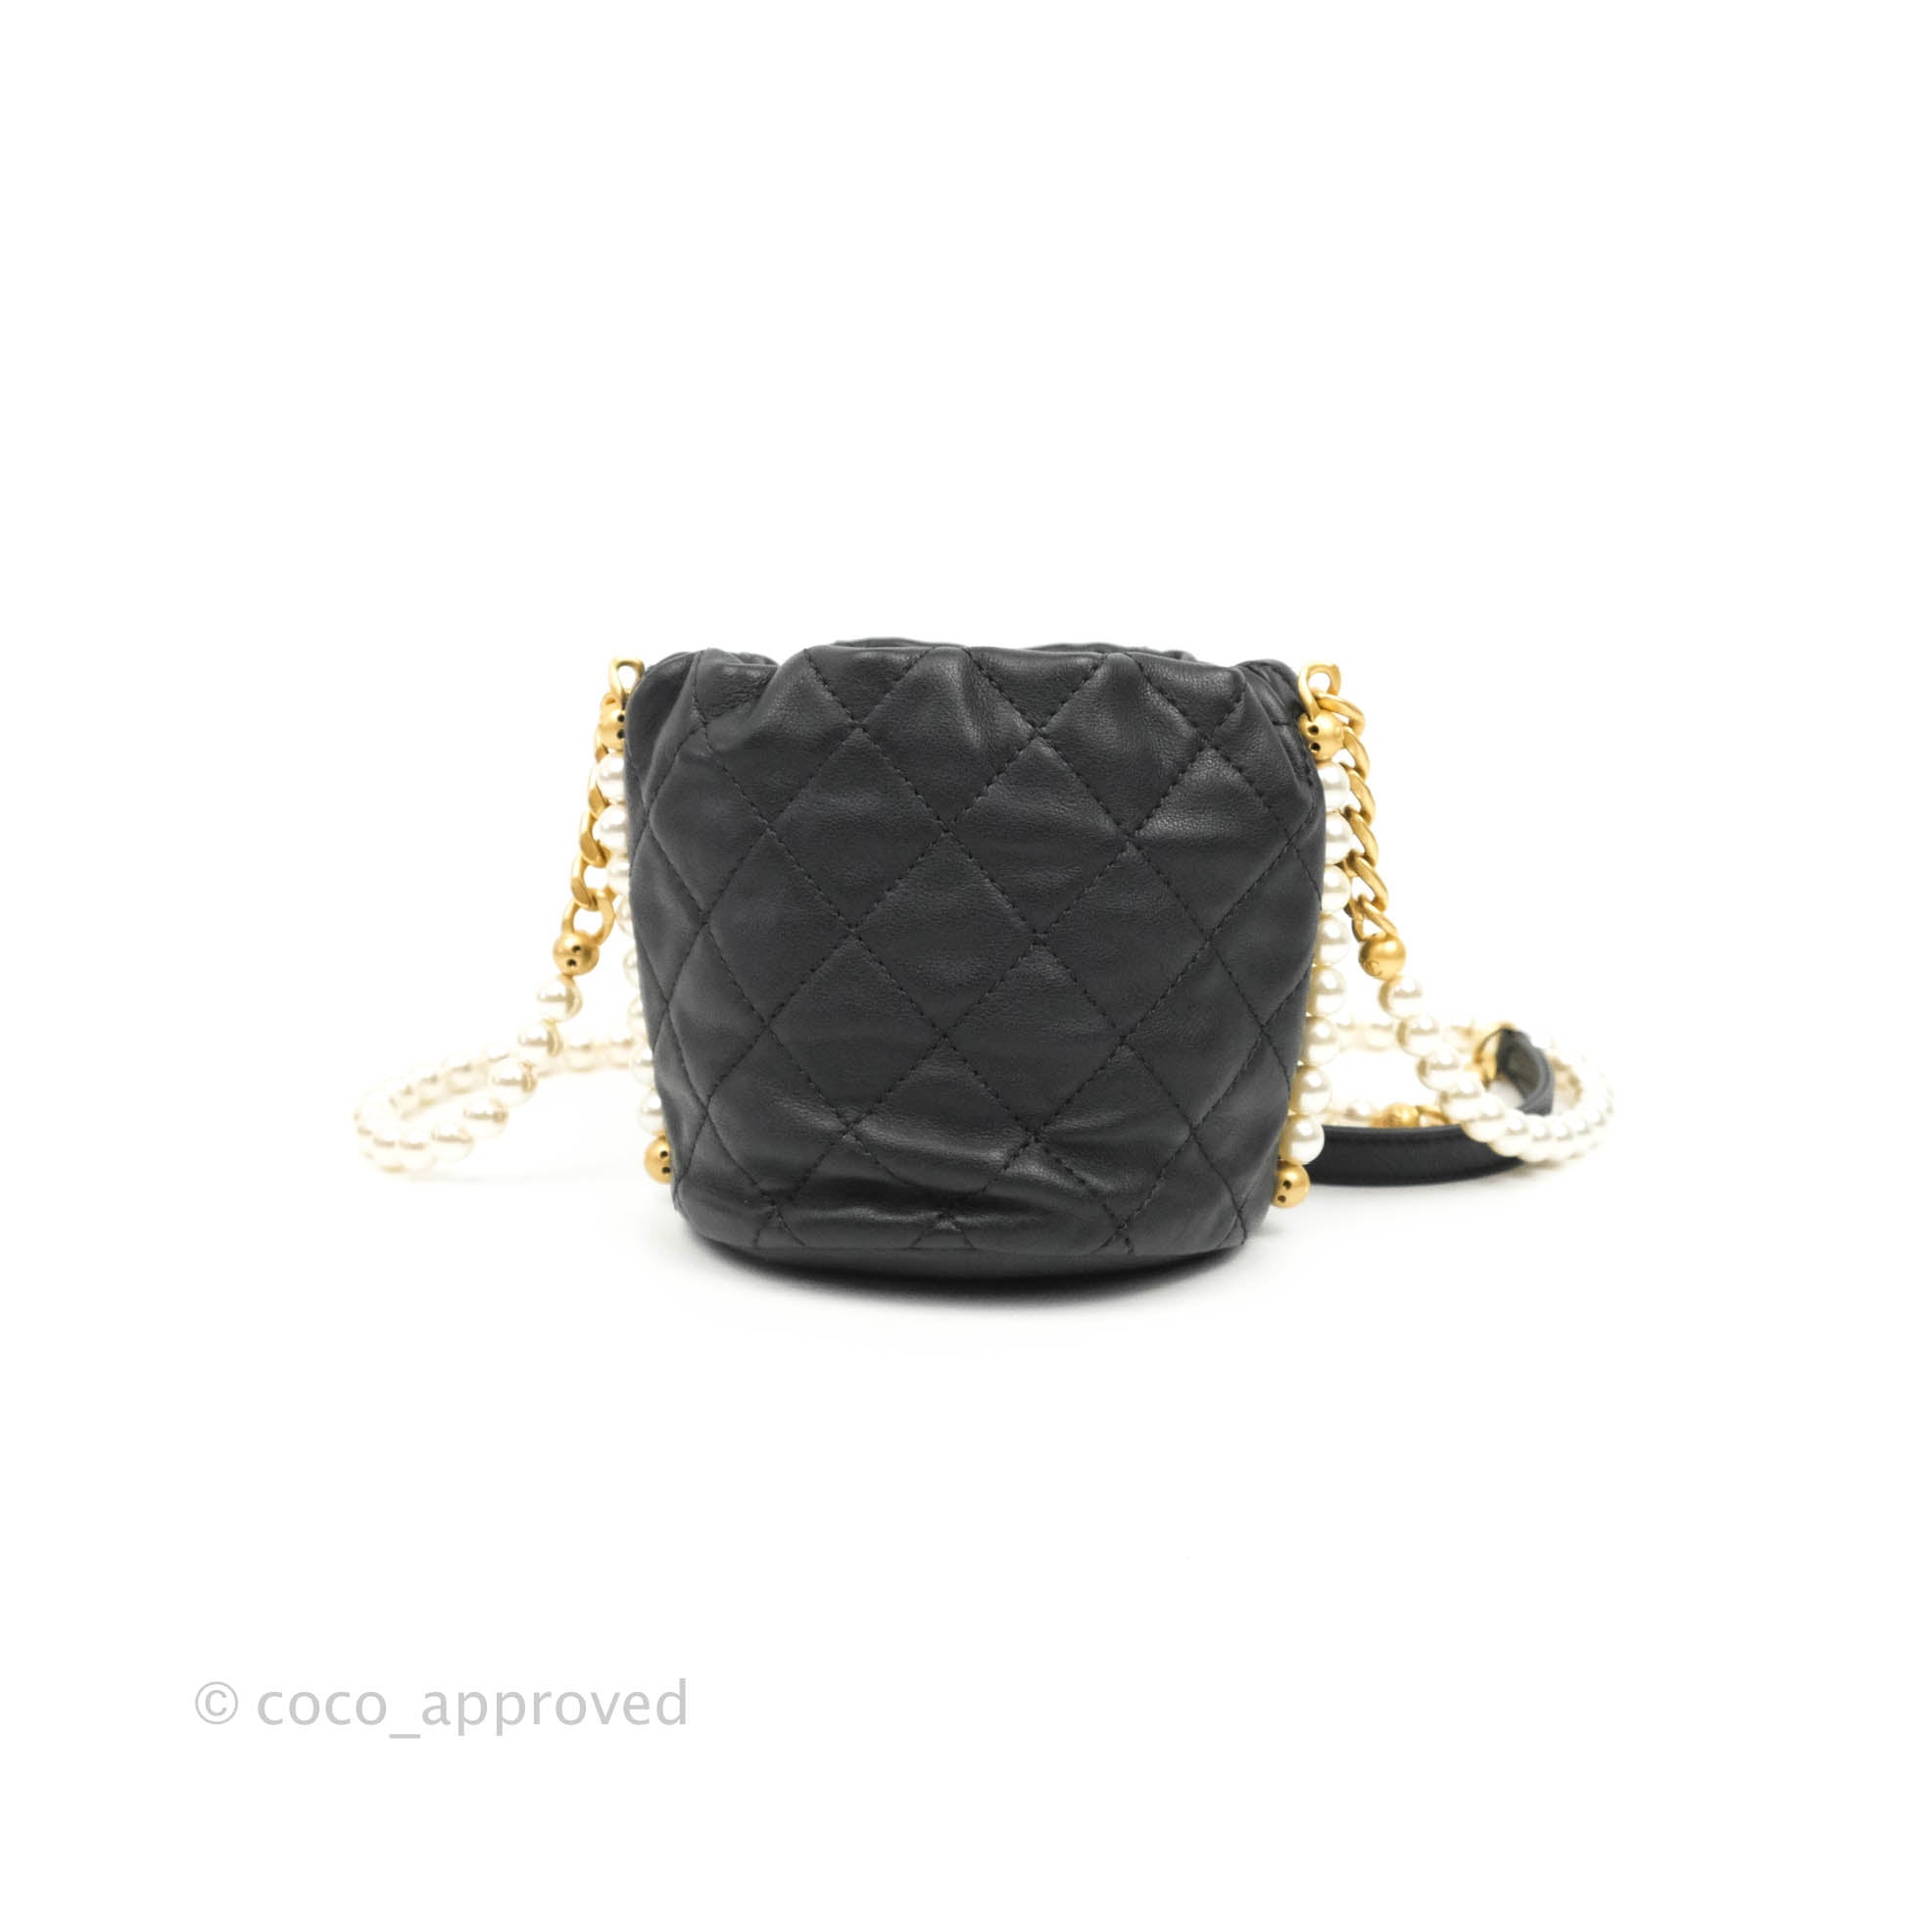 Chanel 2021 Pearl Handle Drawstring Bag - Black Bucket Bags, Handbags -  CHA759867